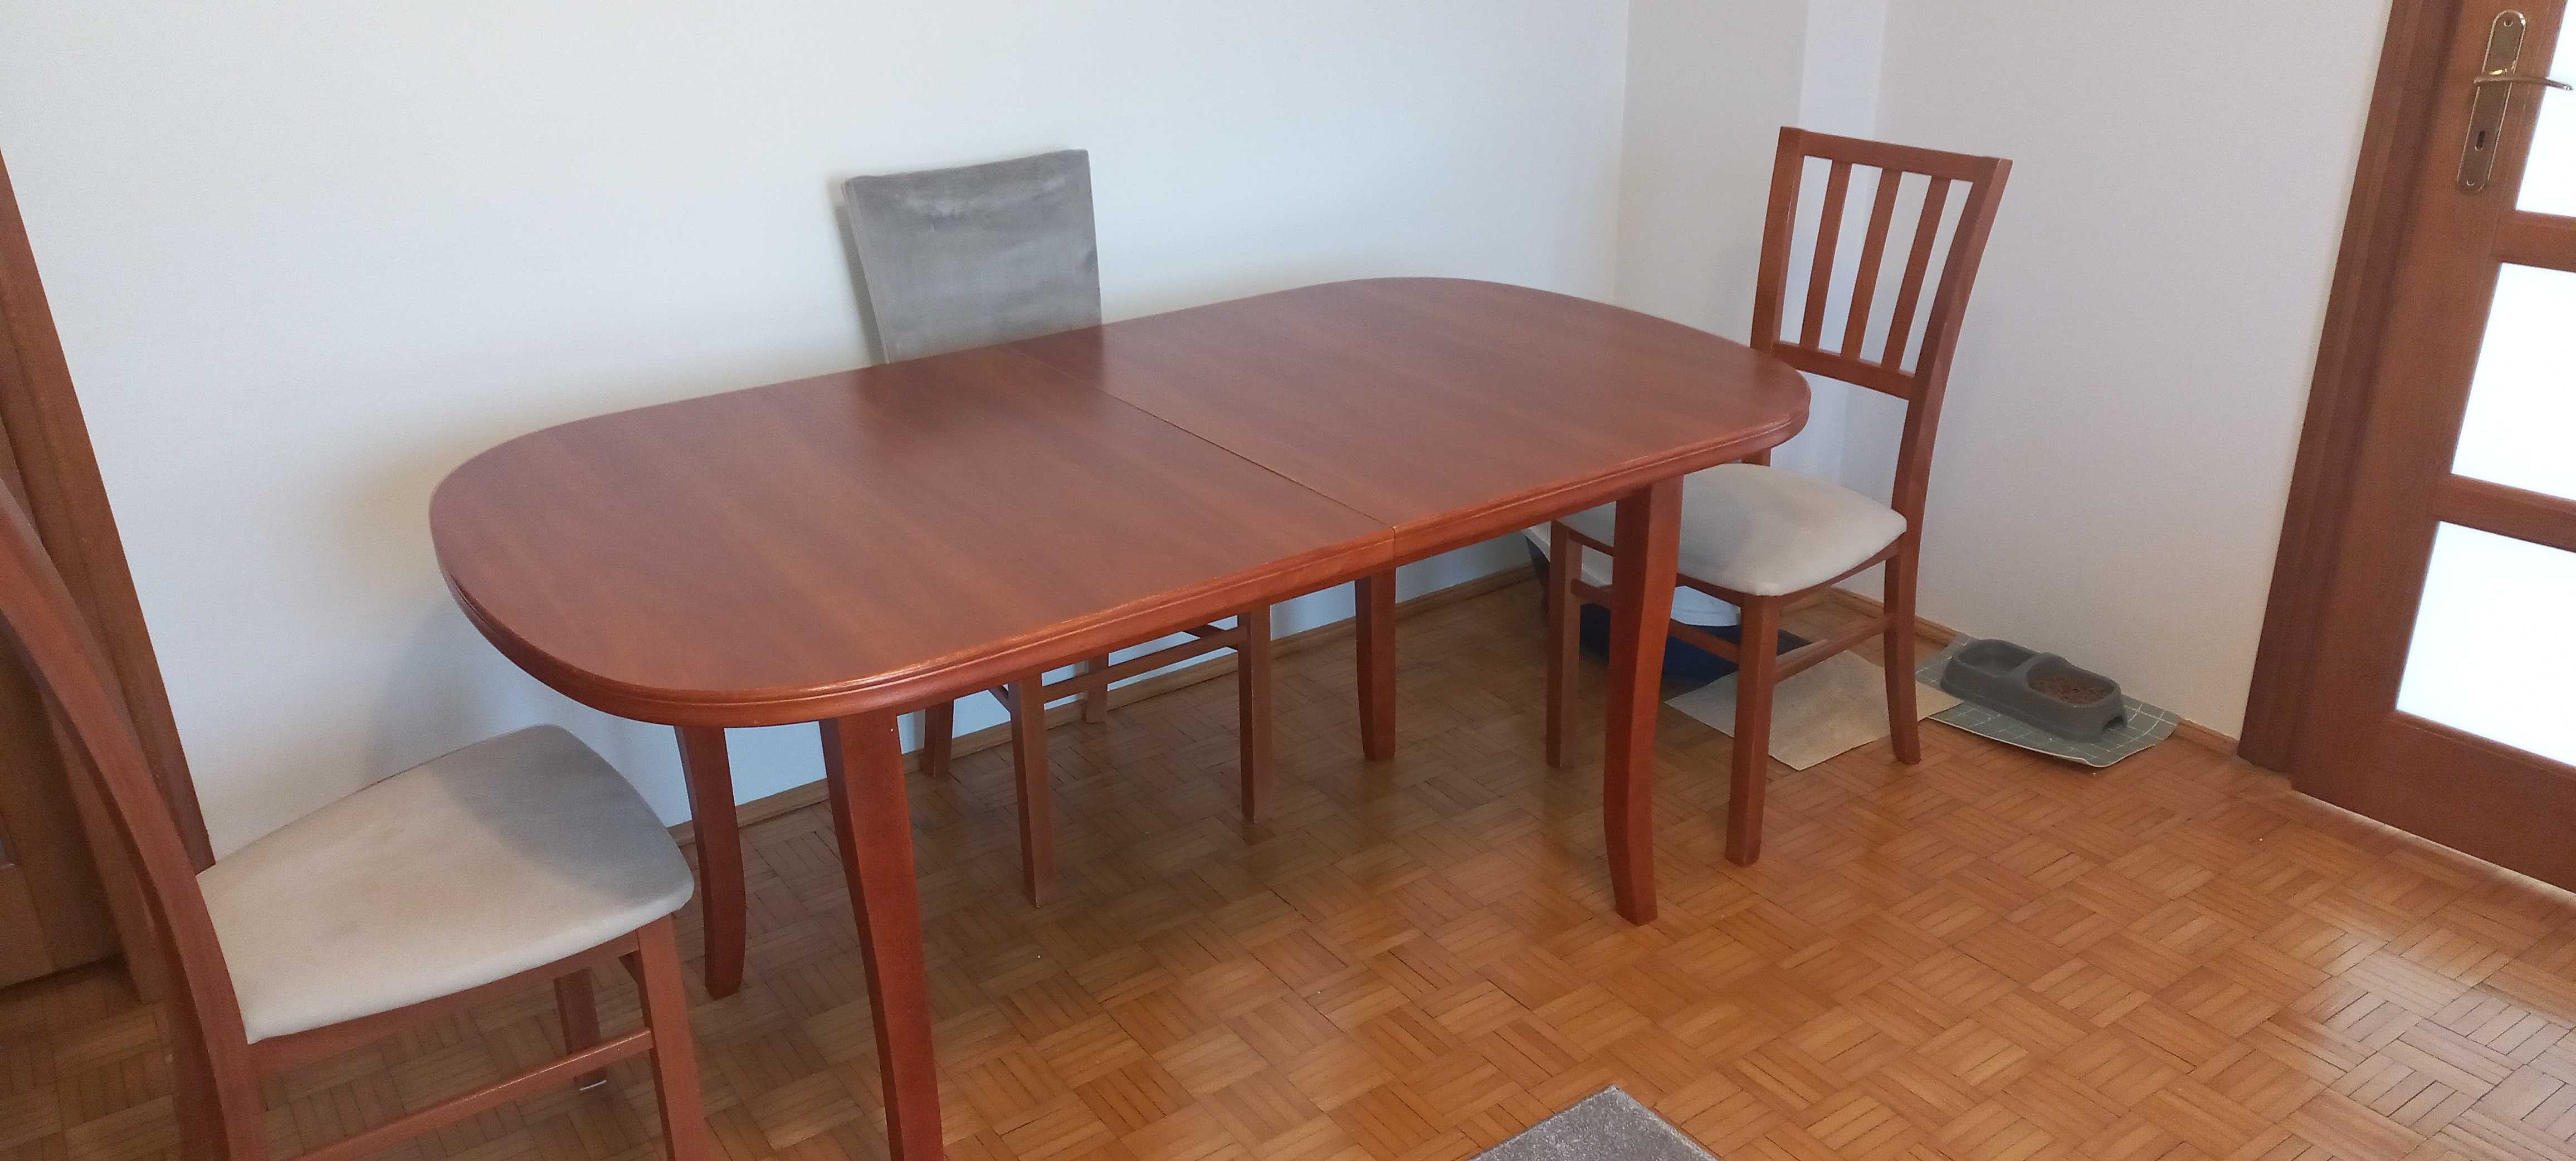 Stół pokojowy z 4 krzesłami